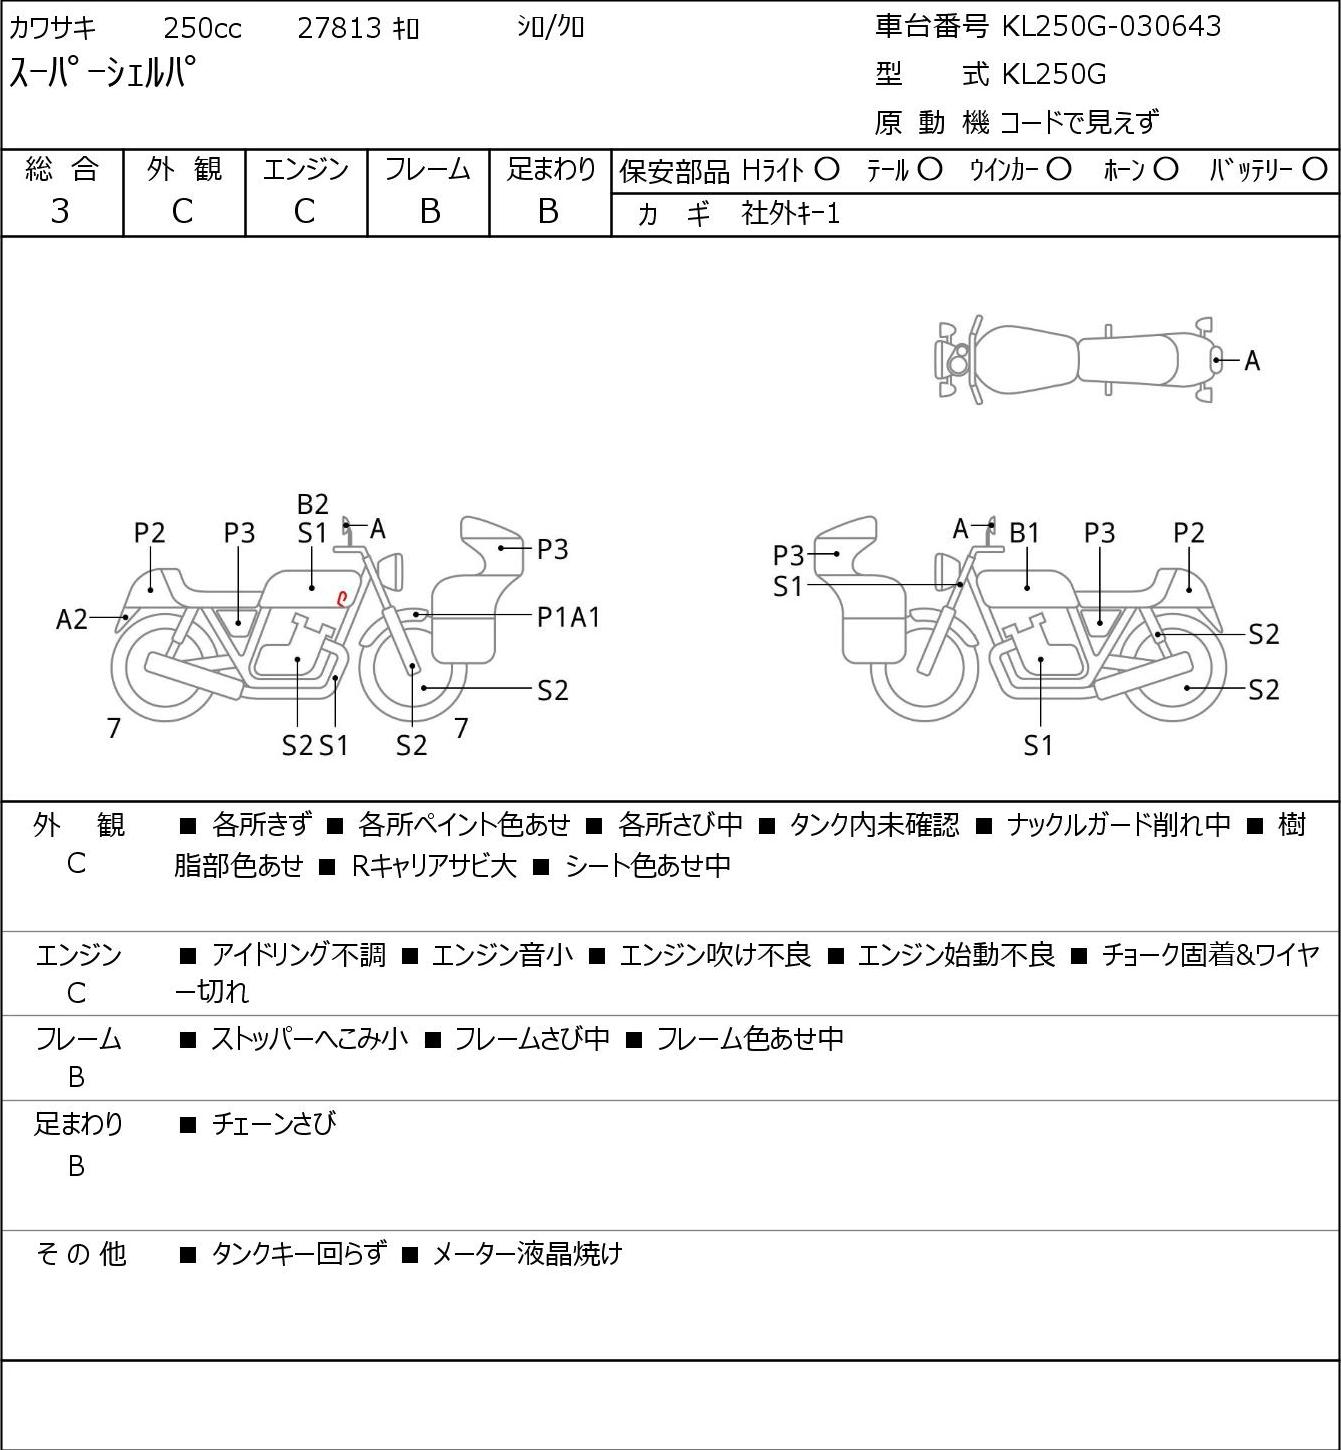 Kawasaki SUPER SHERPA KL250G 2003г. 27813